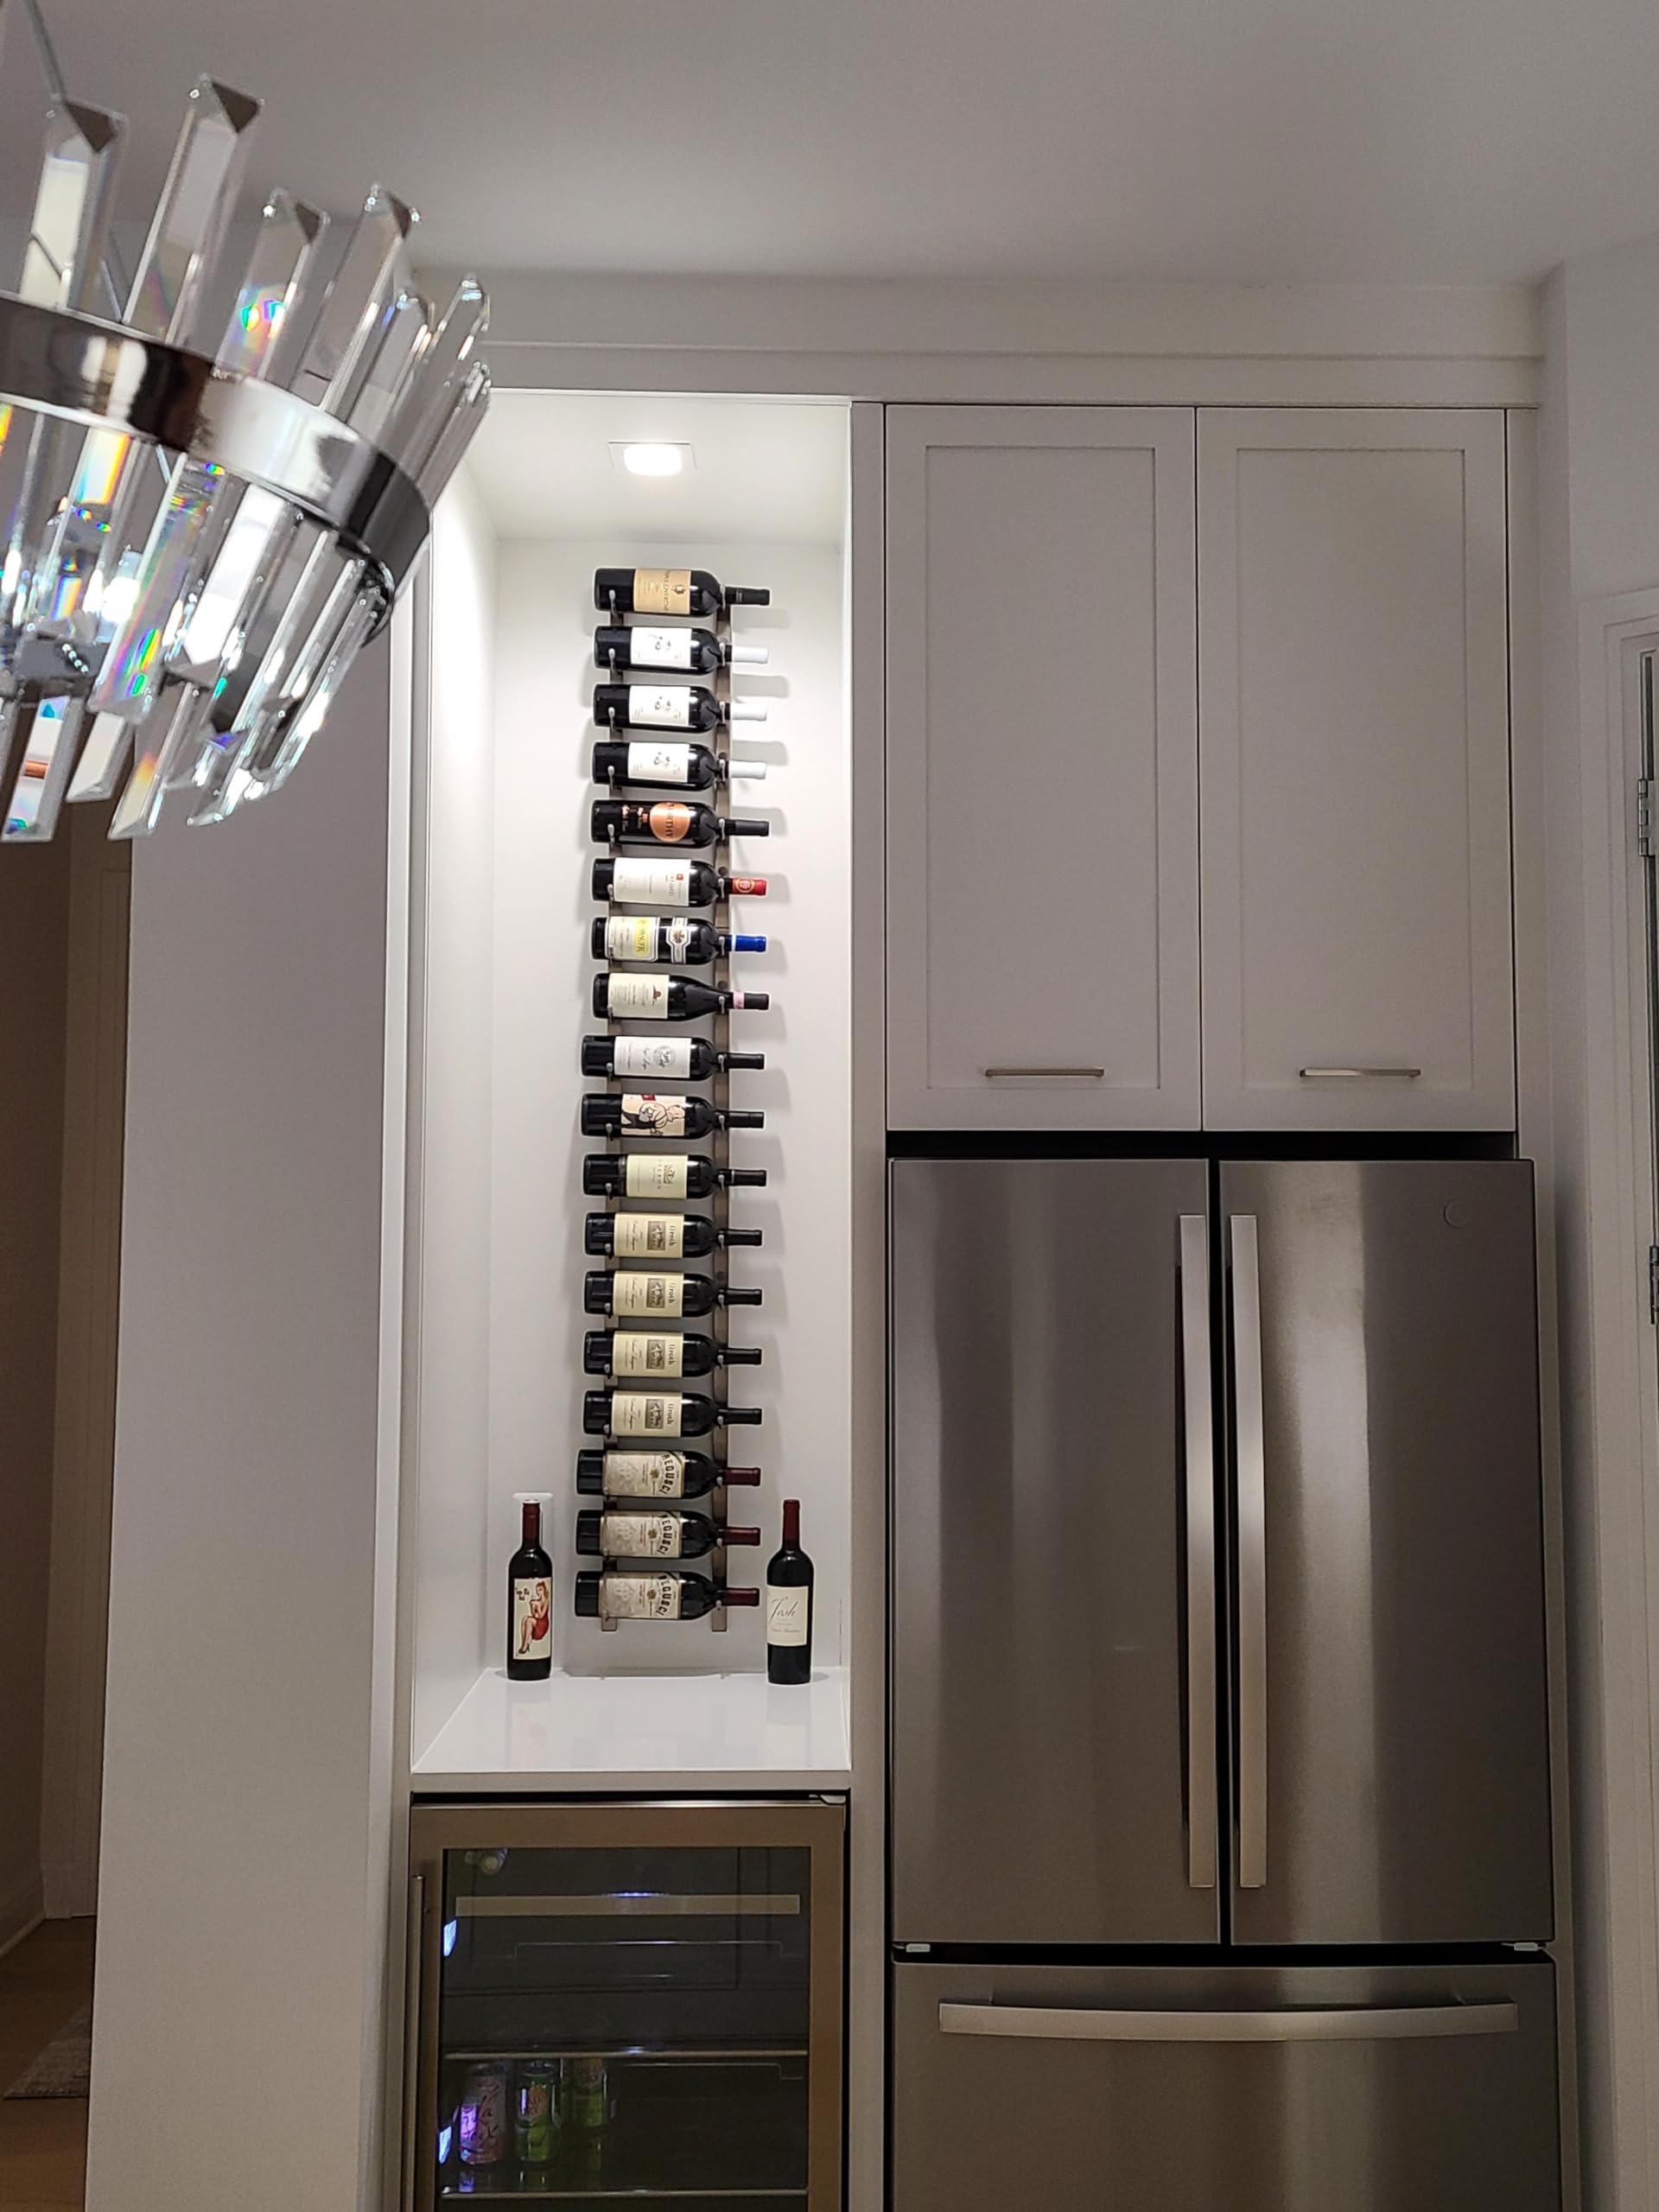 W Series Pro Wine Rack 6 - Single Depth, Metal Wall Mounted Wine Rack - Modern, Easy Access Wine Storage - Space Saving Wine Rack with Storage Capacity (18 Bottles, Brush Nickel)